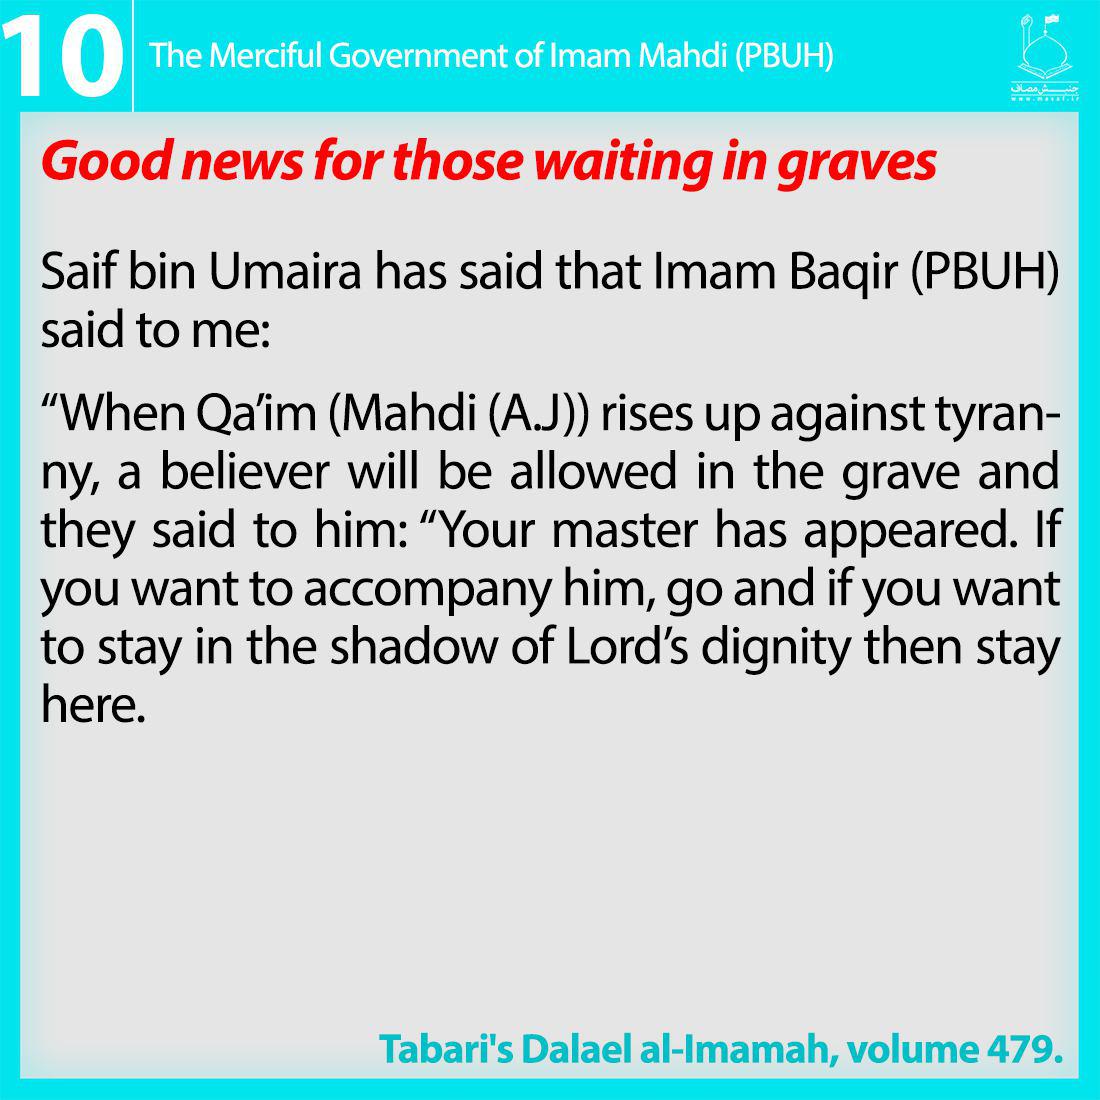 12th imam